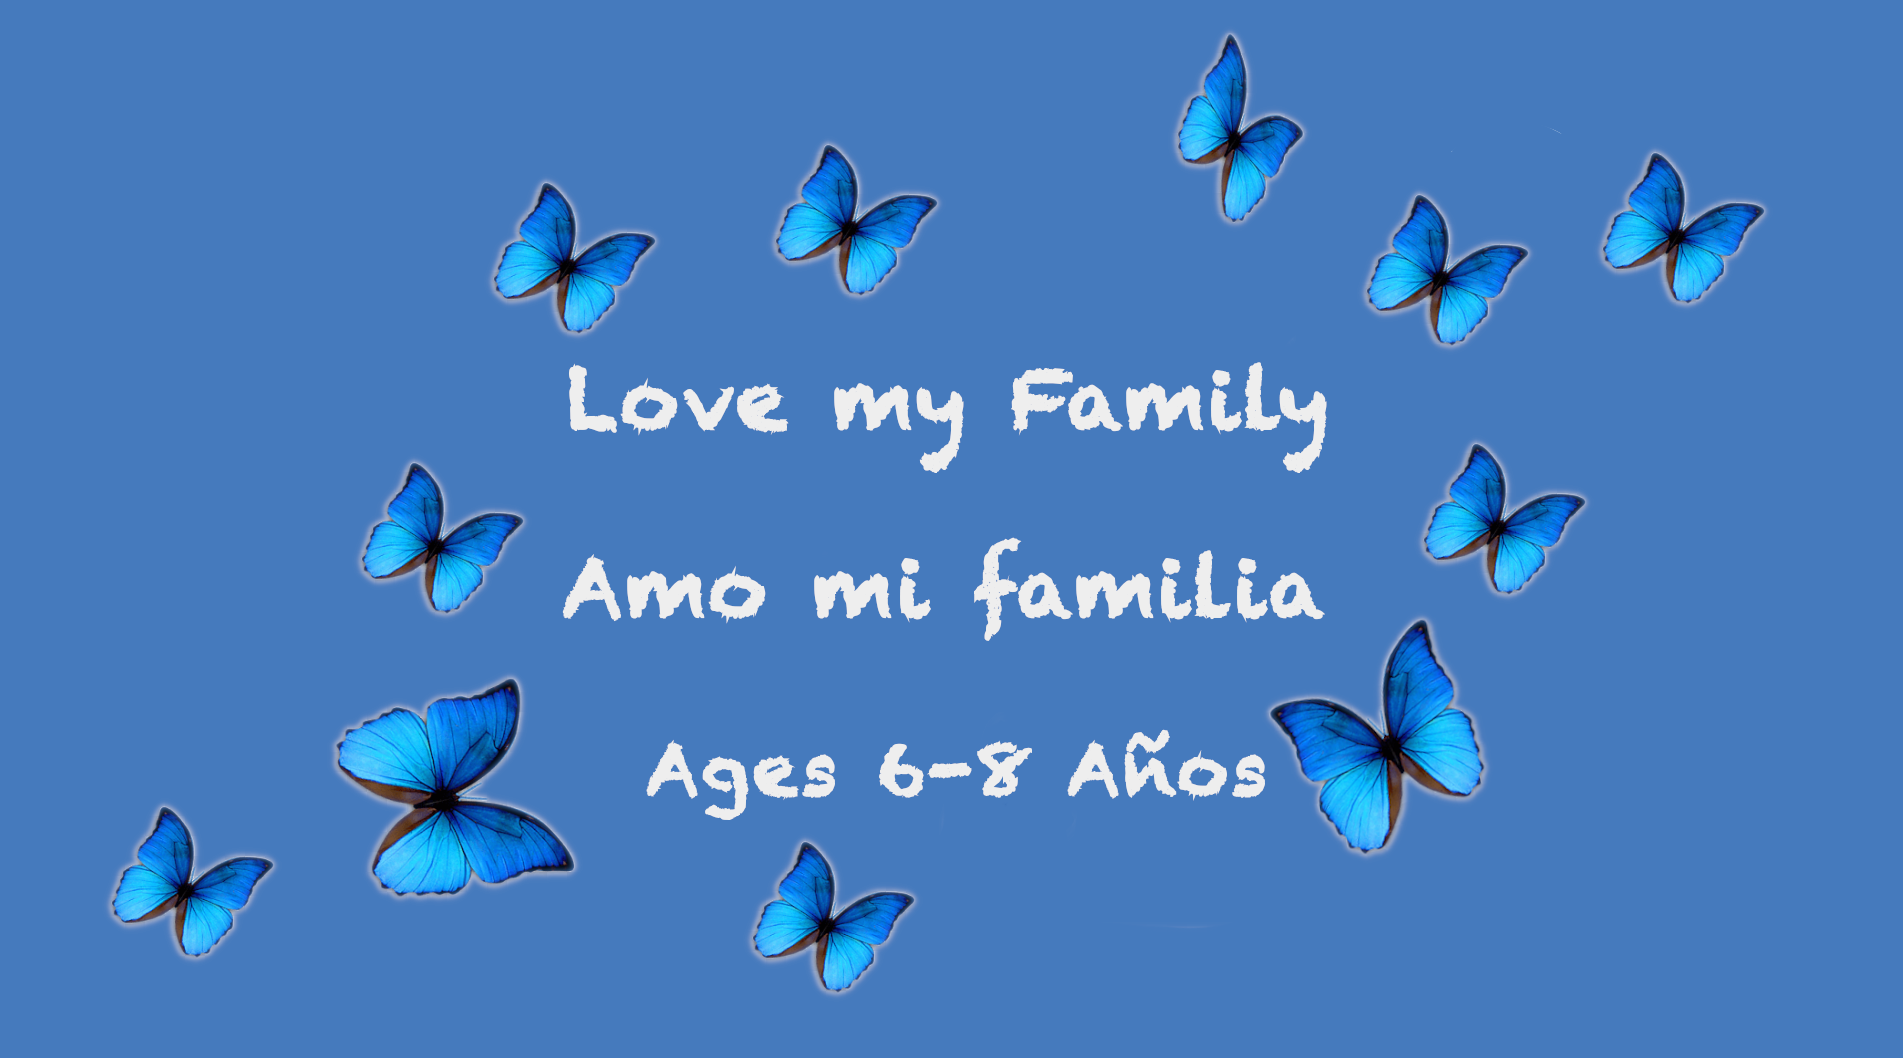 Temas semanales: Amar a mi familia para 6-8 años